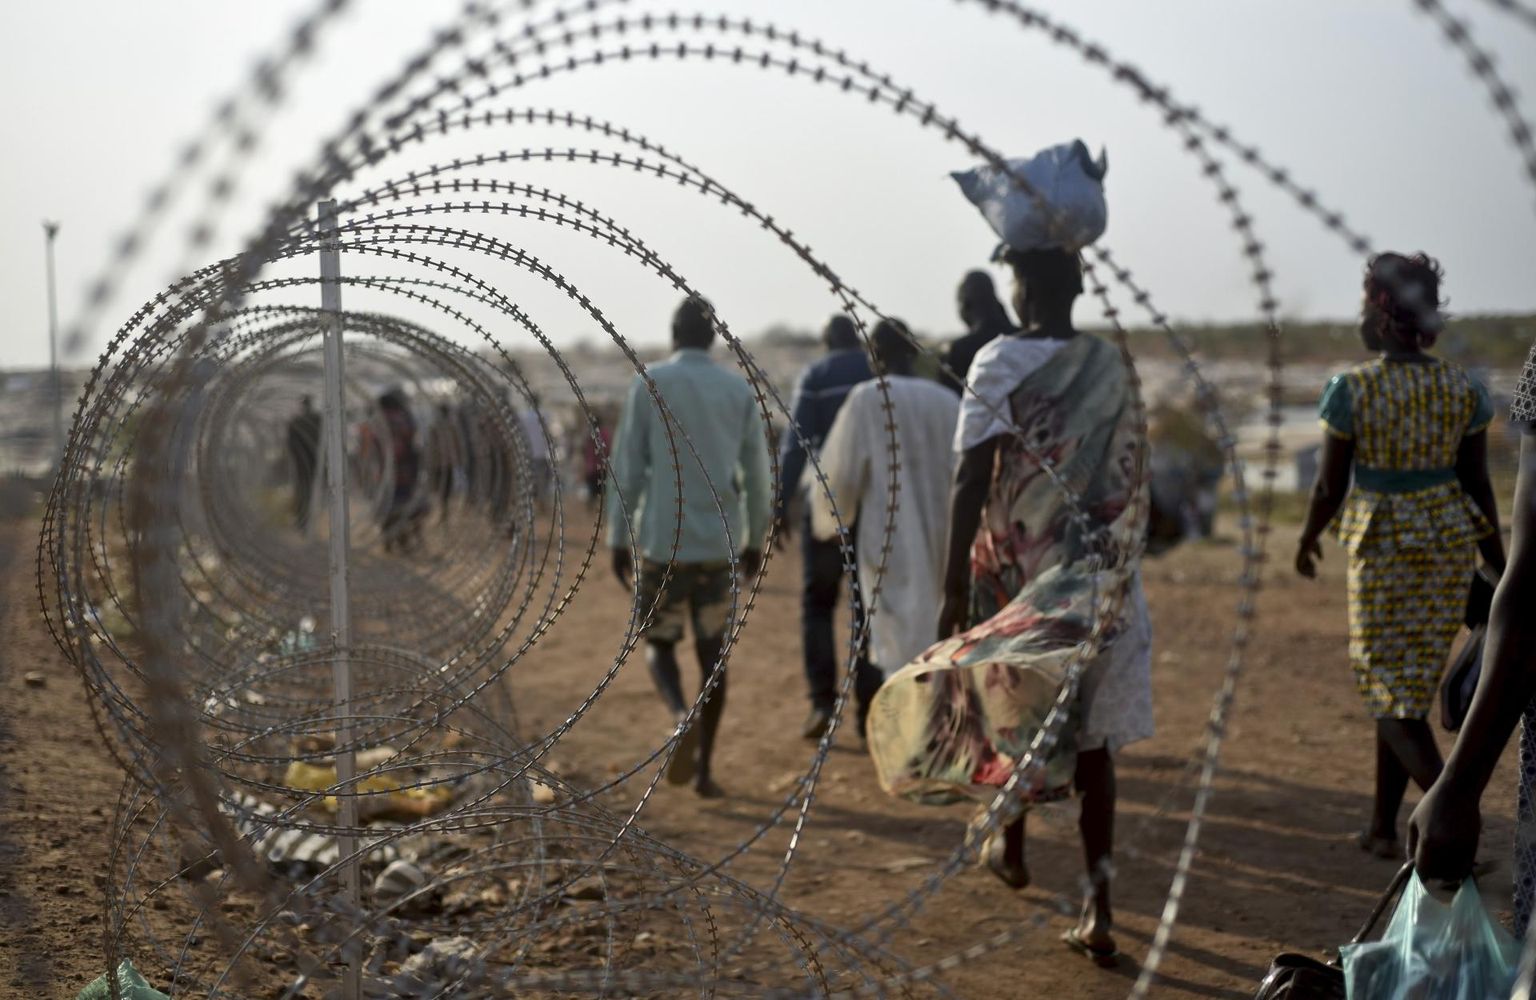 Sisepõgenikud kõndimas ÜRO baasi okastraataia ääres Lõuna-Sudaani pealinnas Jubas. Kodusõja ajal kasutasid valitsusväed vägistamist laialdaselt sõjarelvana, piinates ohvreid vahel tundide või päevade kaupa. Vägistamistelaine pole vaibunud ka pärast rahu sõlmimist riigis.